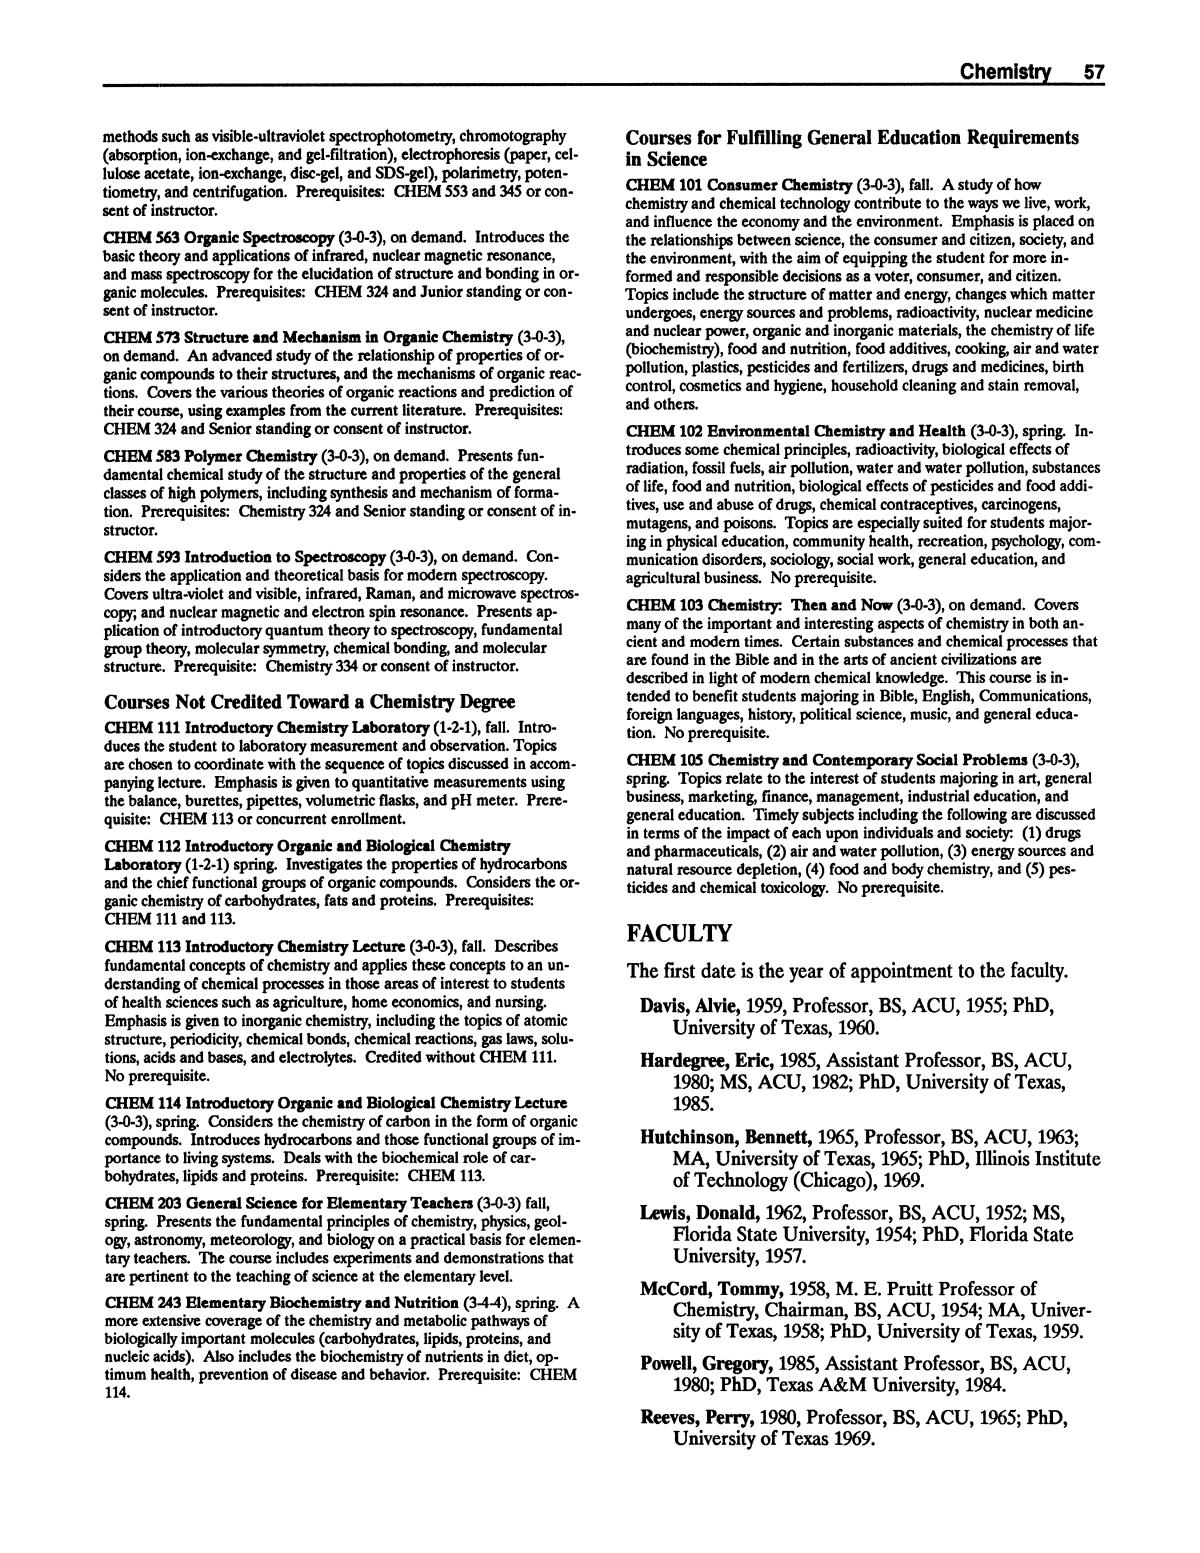 Catalog of Abilene Christian University, 1988-1989
                                                
                                                    57
                                                